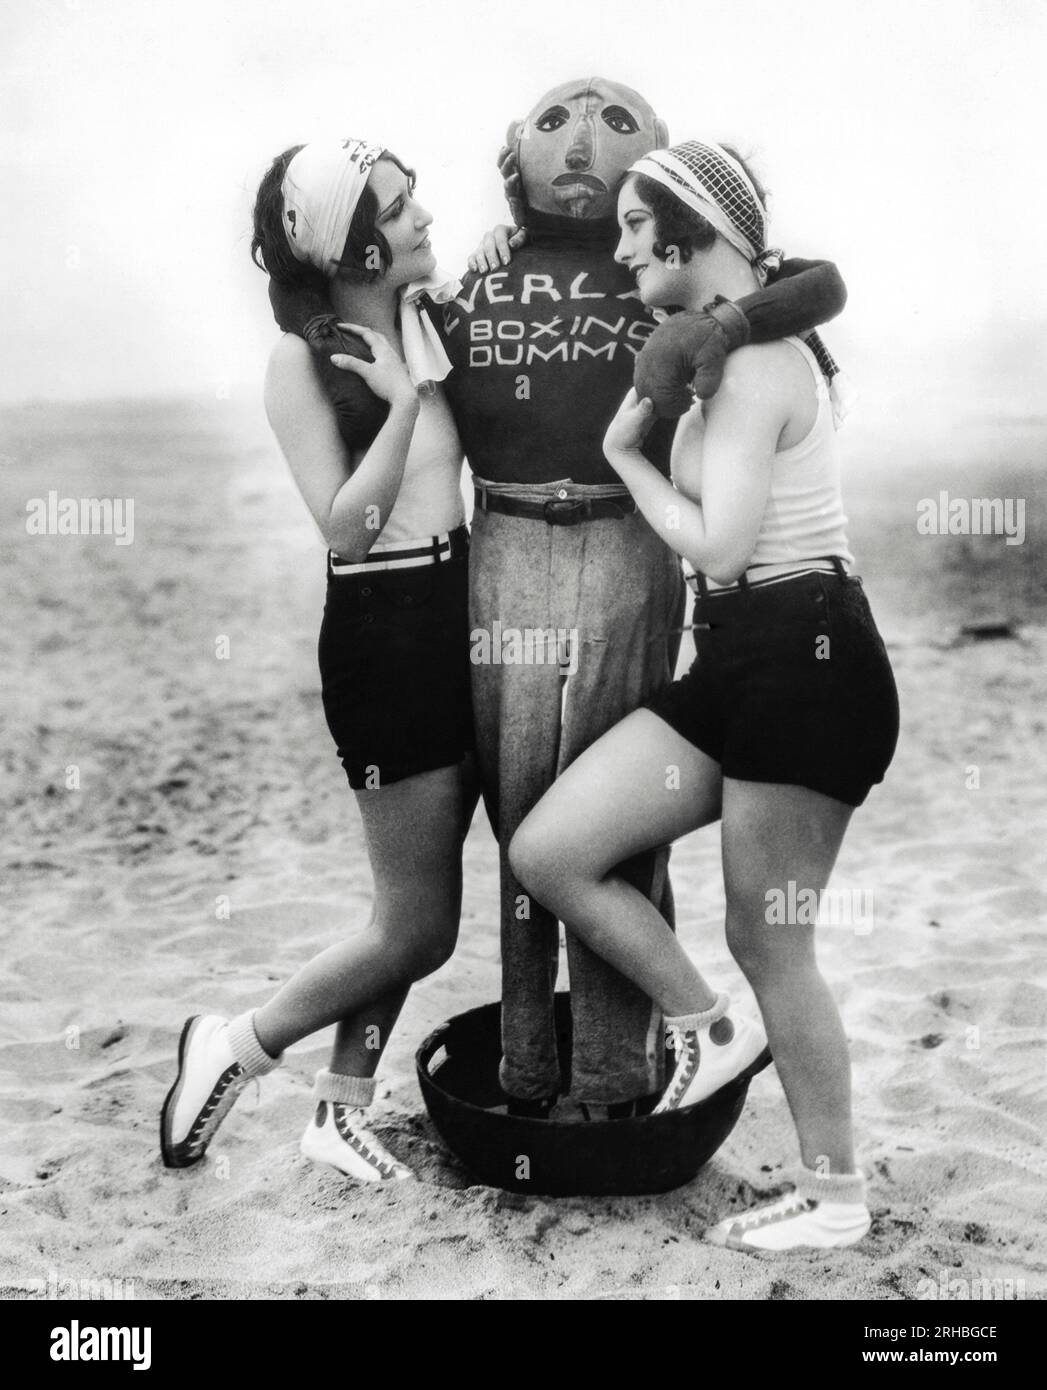 Hollywood, Californie : 21 juin 1927 les actrices Dorothy Sebastian (à gauche) et Joan Crawford (à droite) se disputent l'affection d'un mannequin de boxe Everlast. Banque D'Images